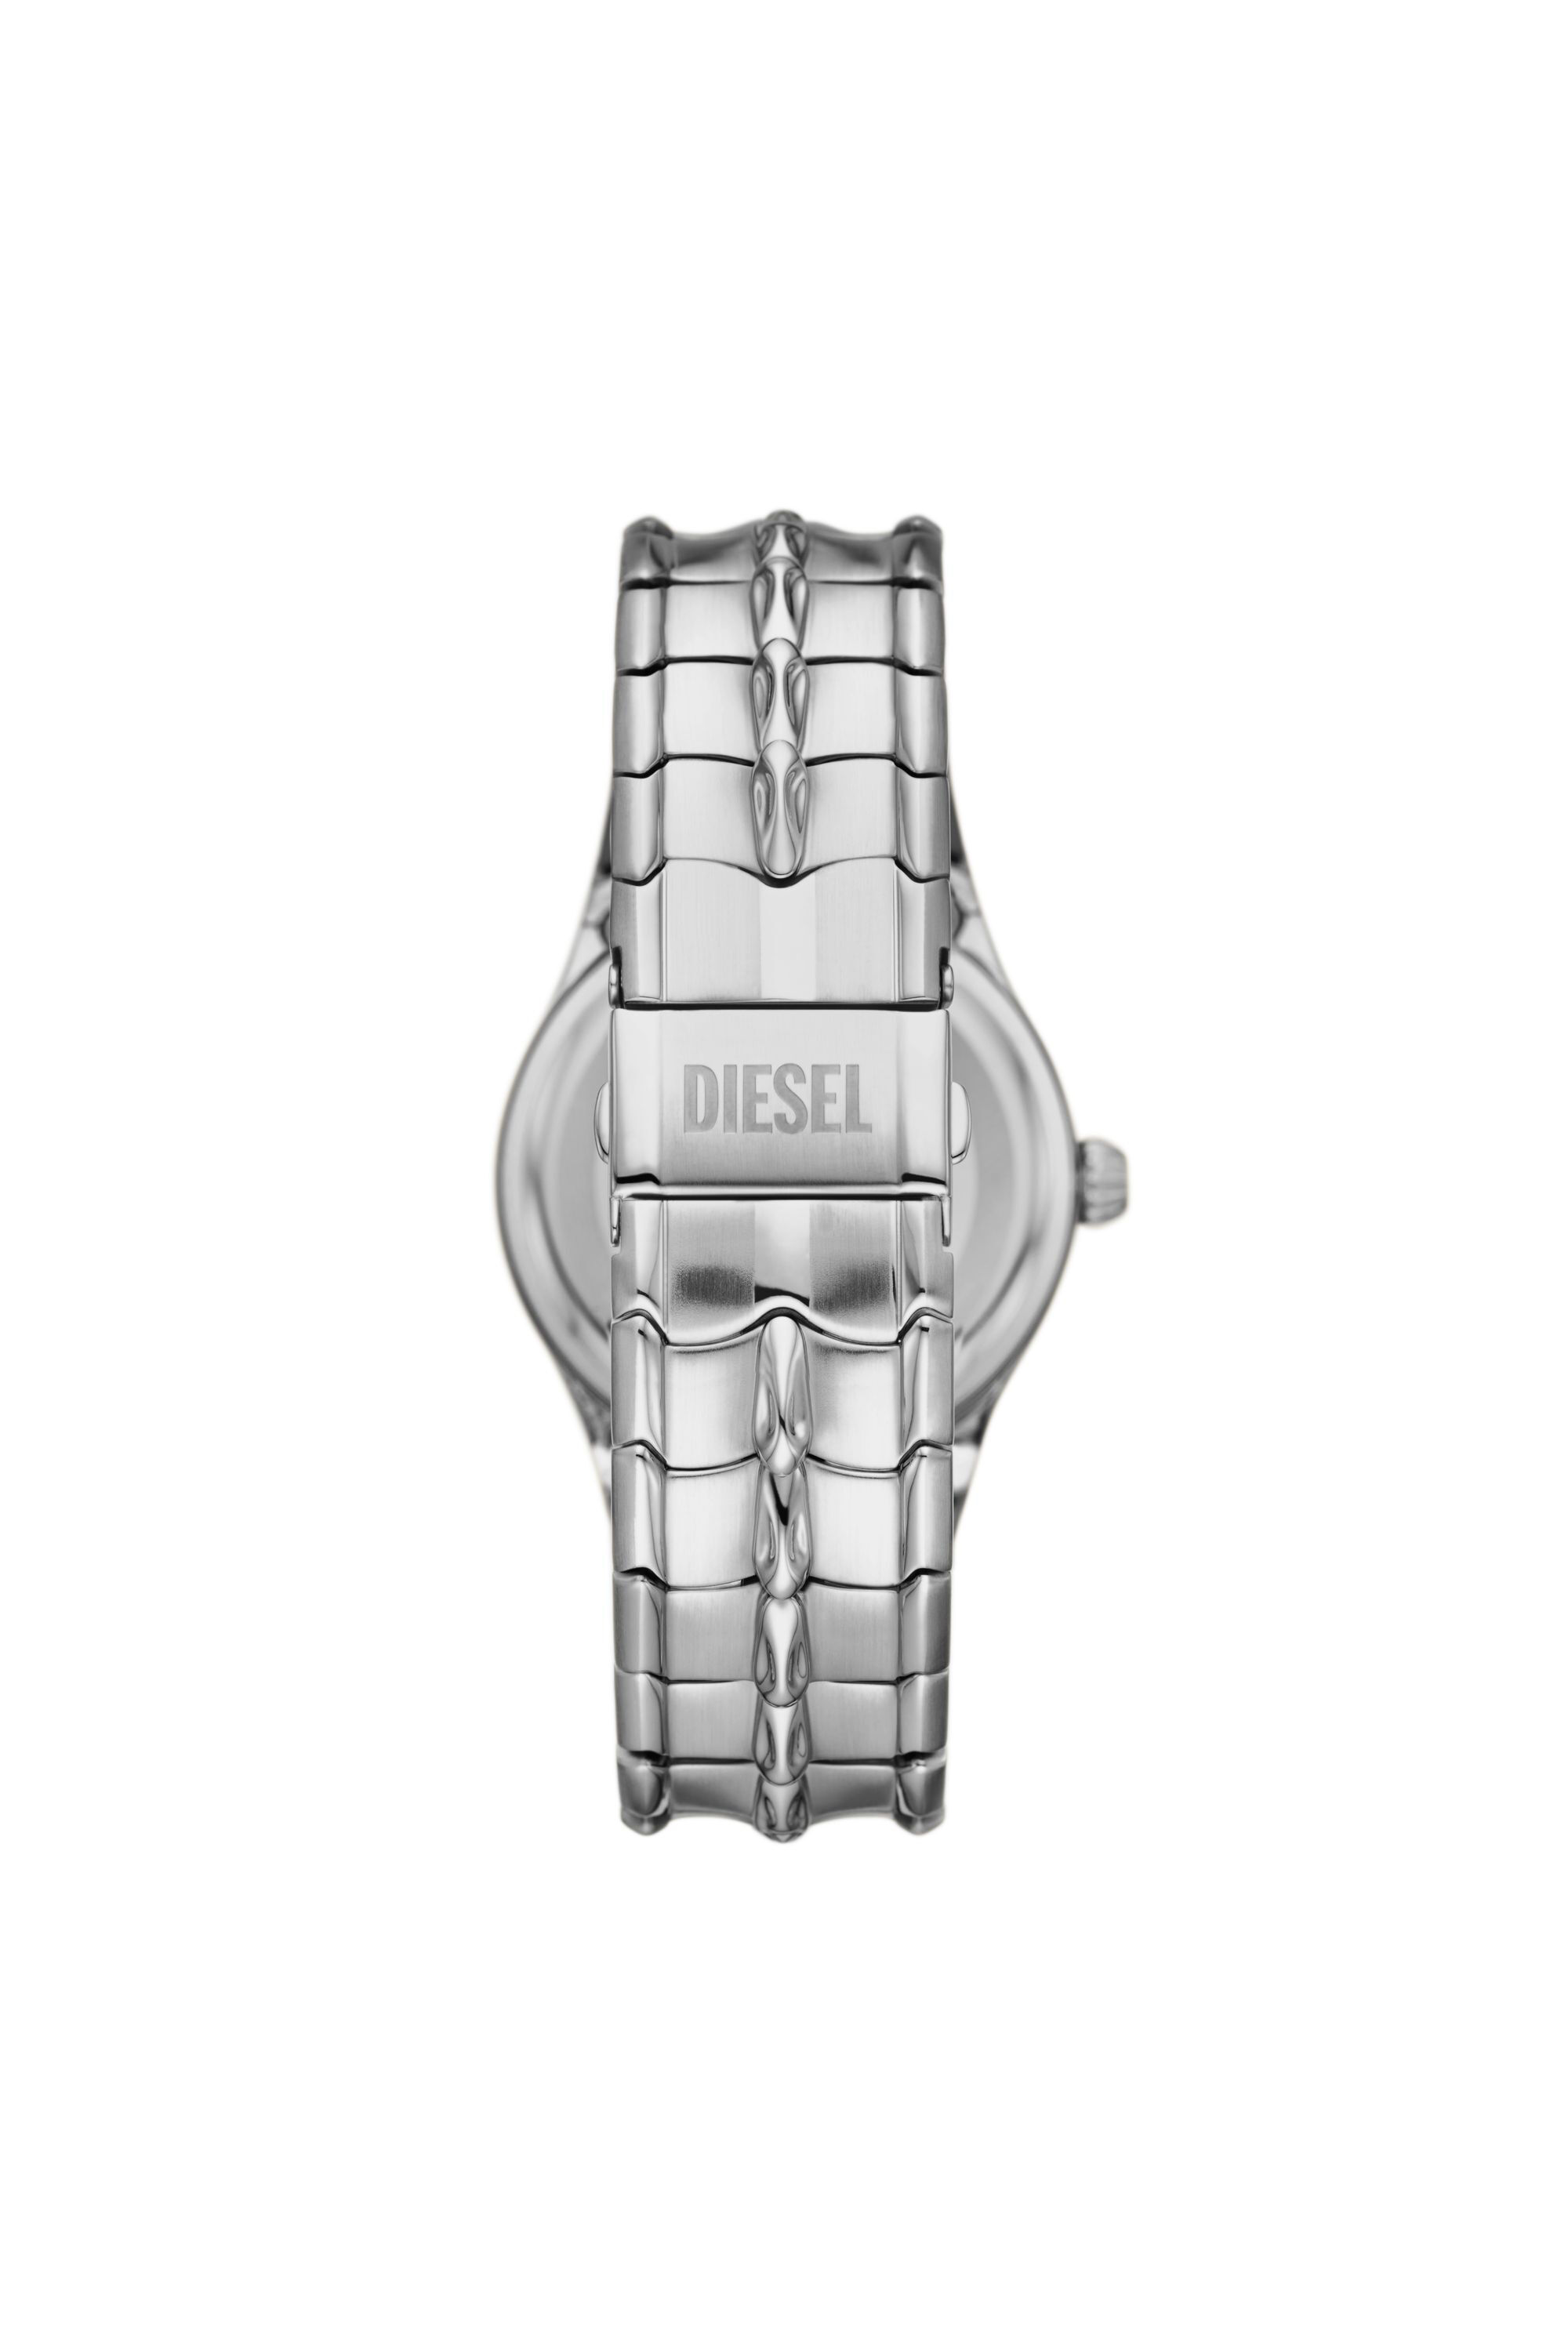 Diesel - DZ2185, Silver - Image 2